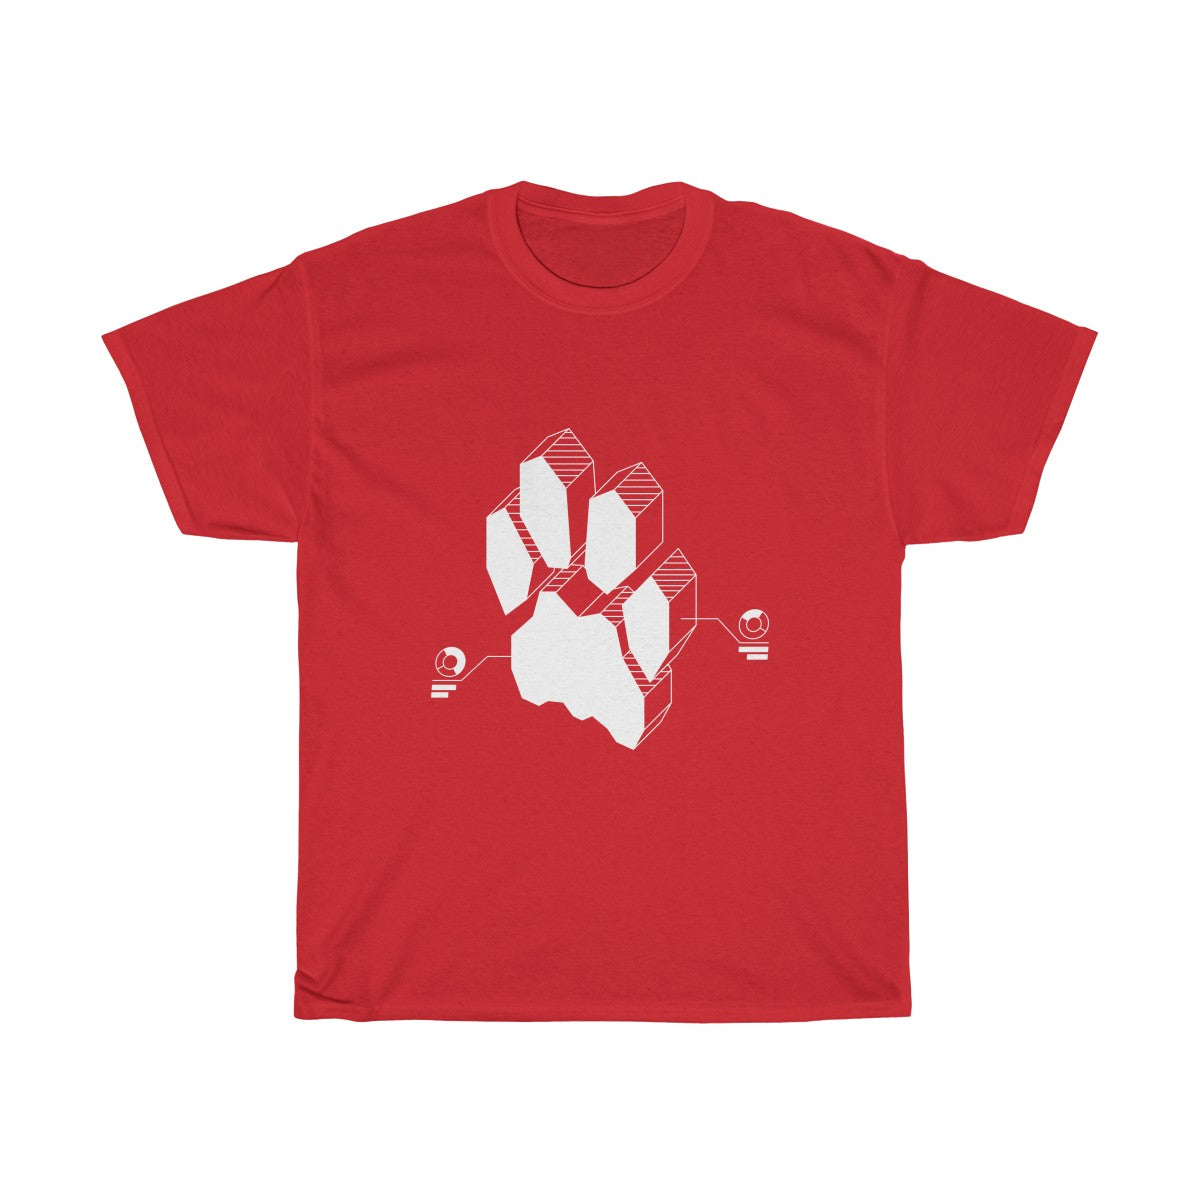 Techno Feline - T-Shirt T-Shirt Wexon Red S 